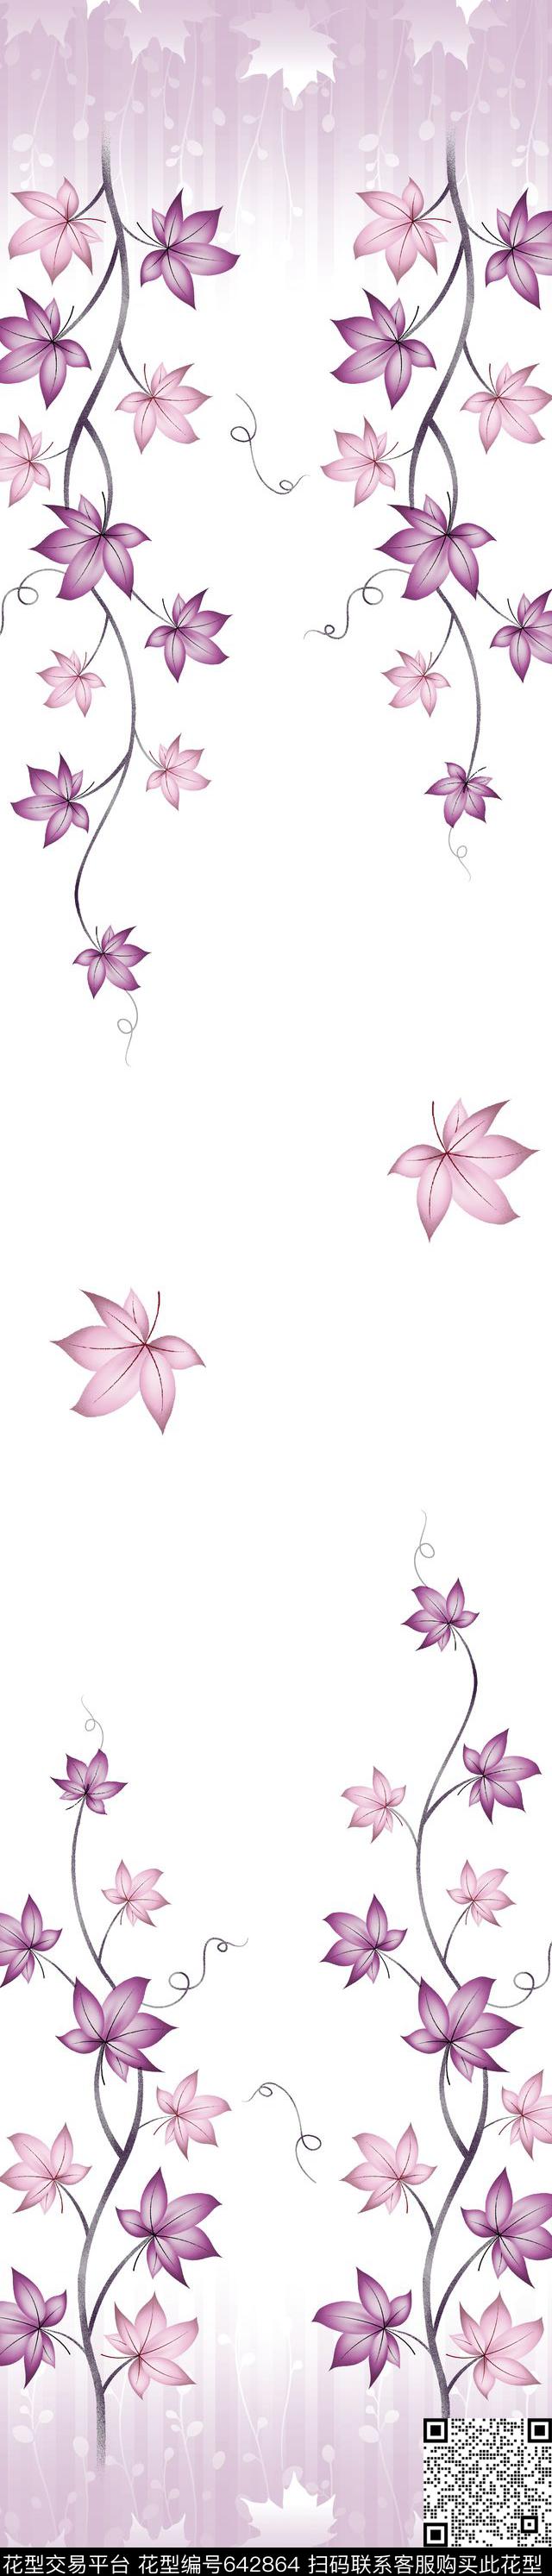 YJH0516a.jpg - 642864 - 叶子 枫叶 - 传统印花花型 － 窗帘花型设计 － 瓦栏